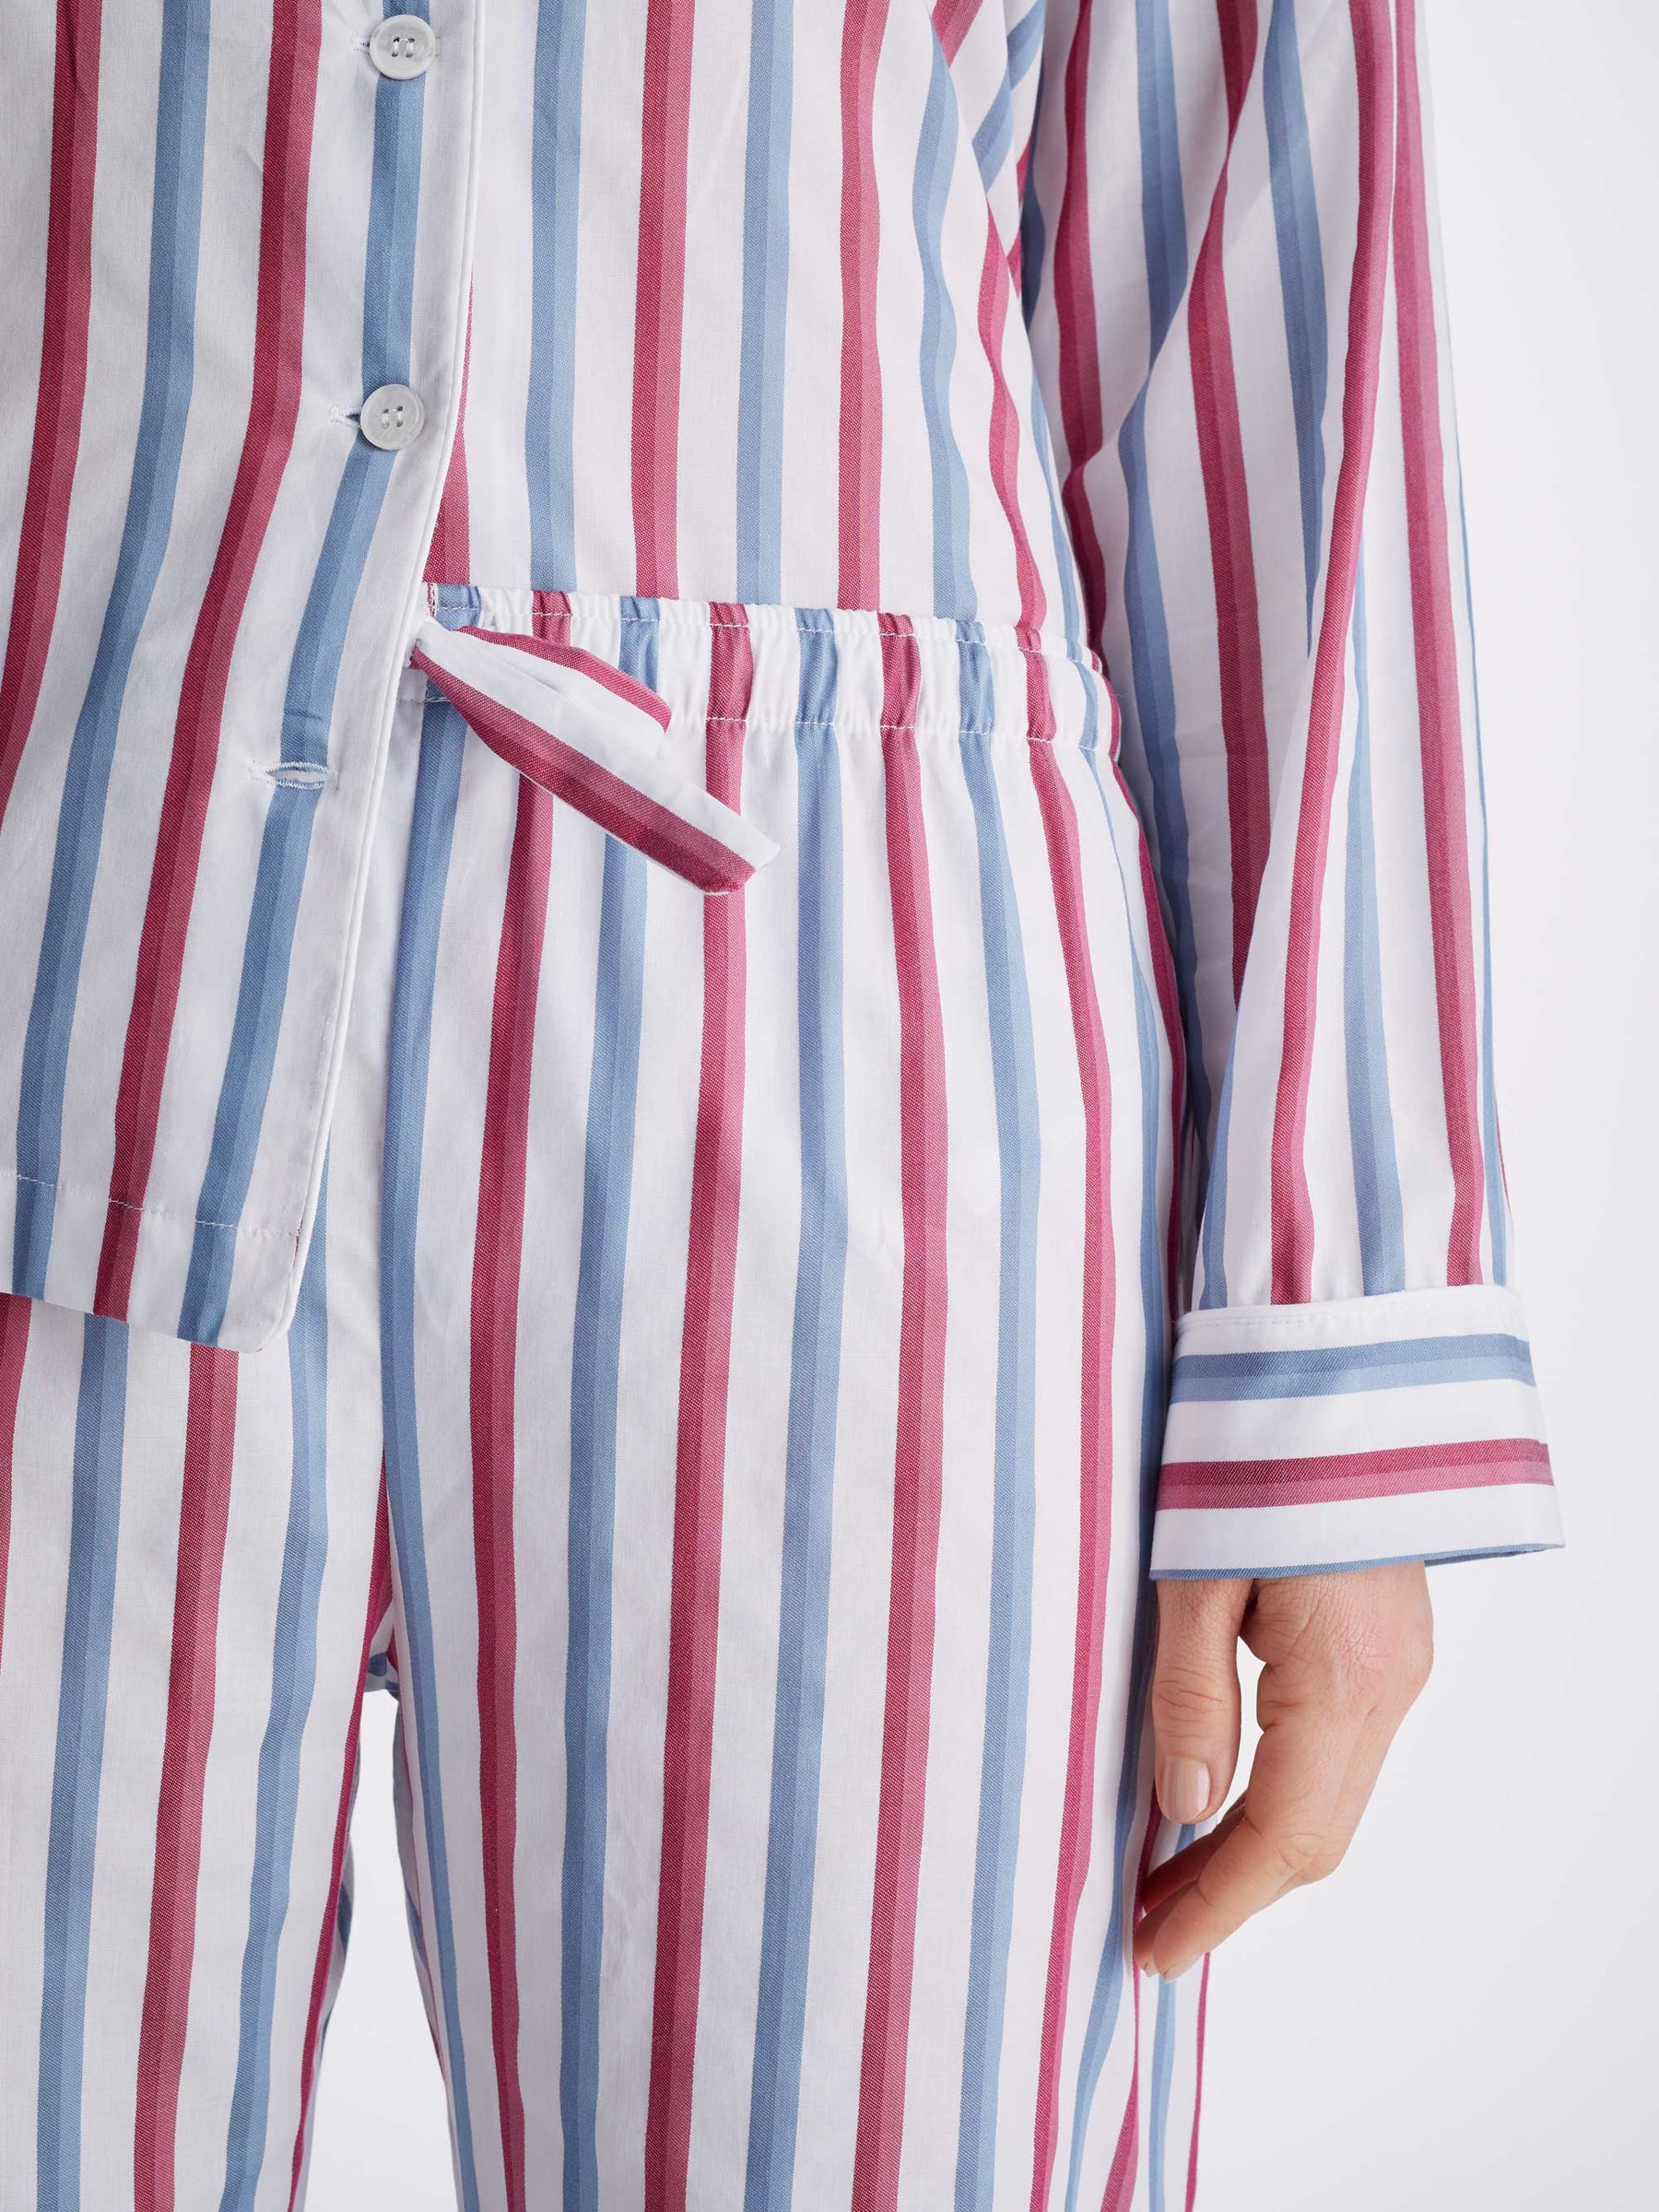 Women's Pyjamas Capri 22 Cotton Batiste Multi